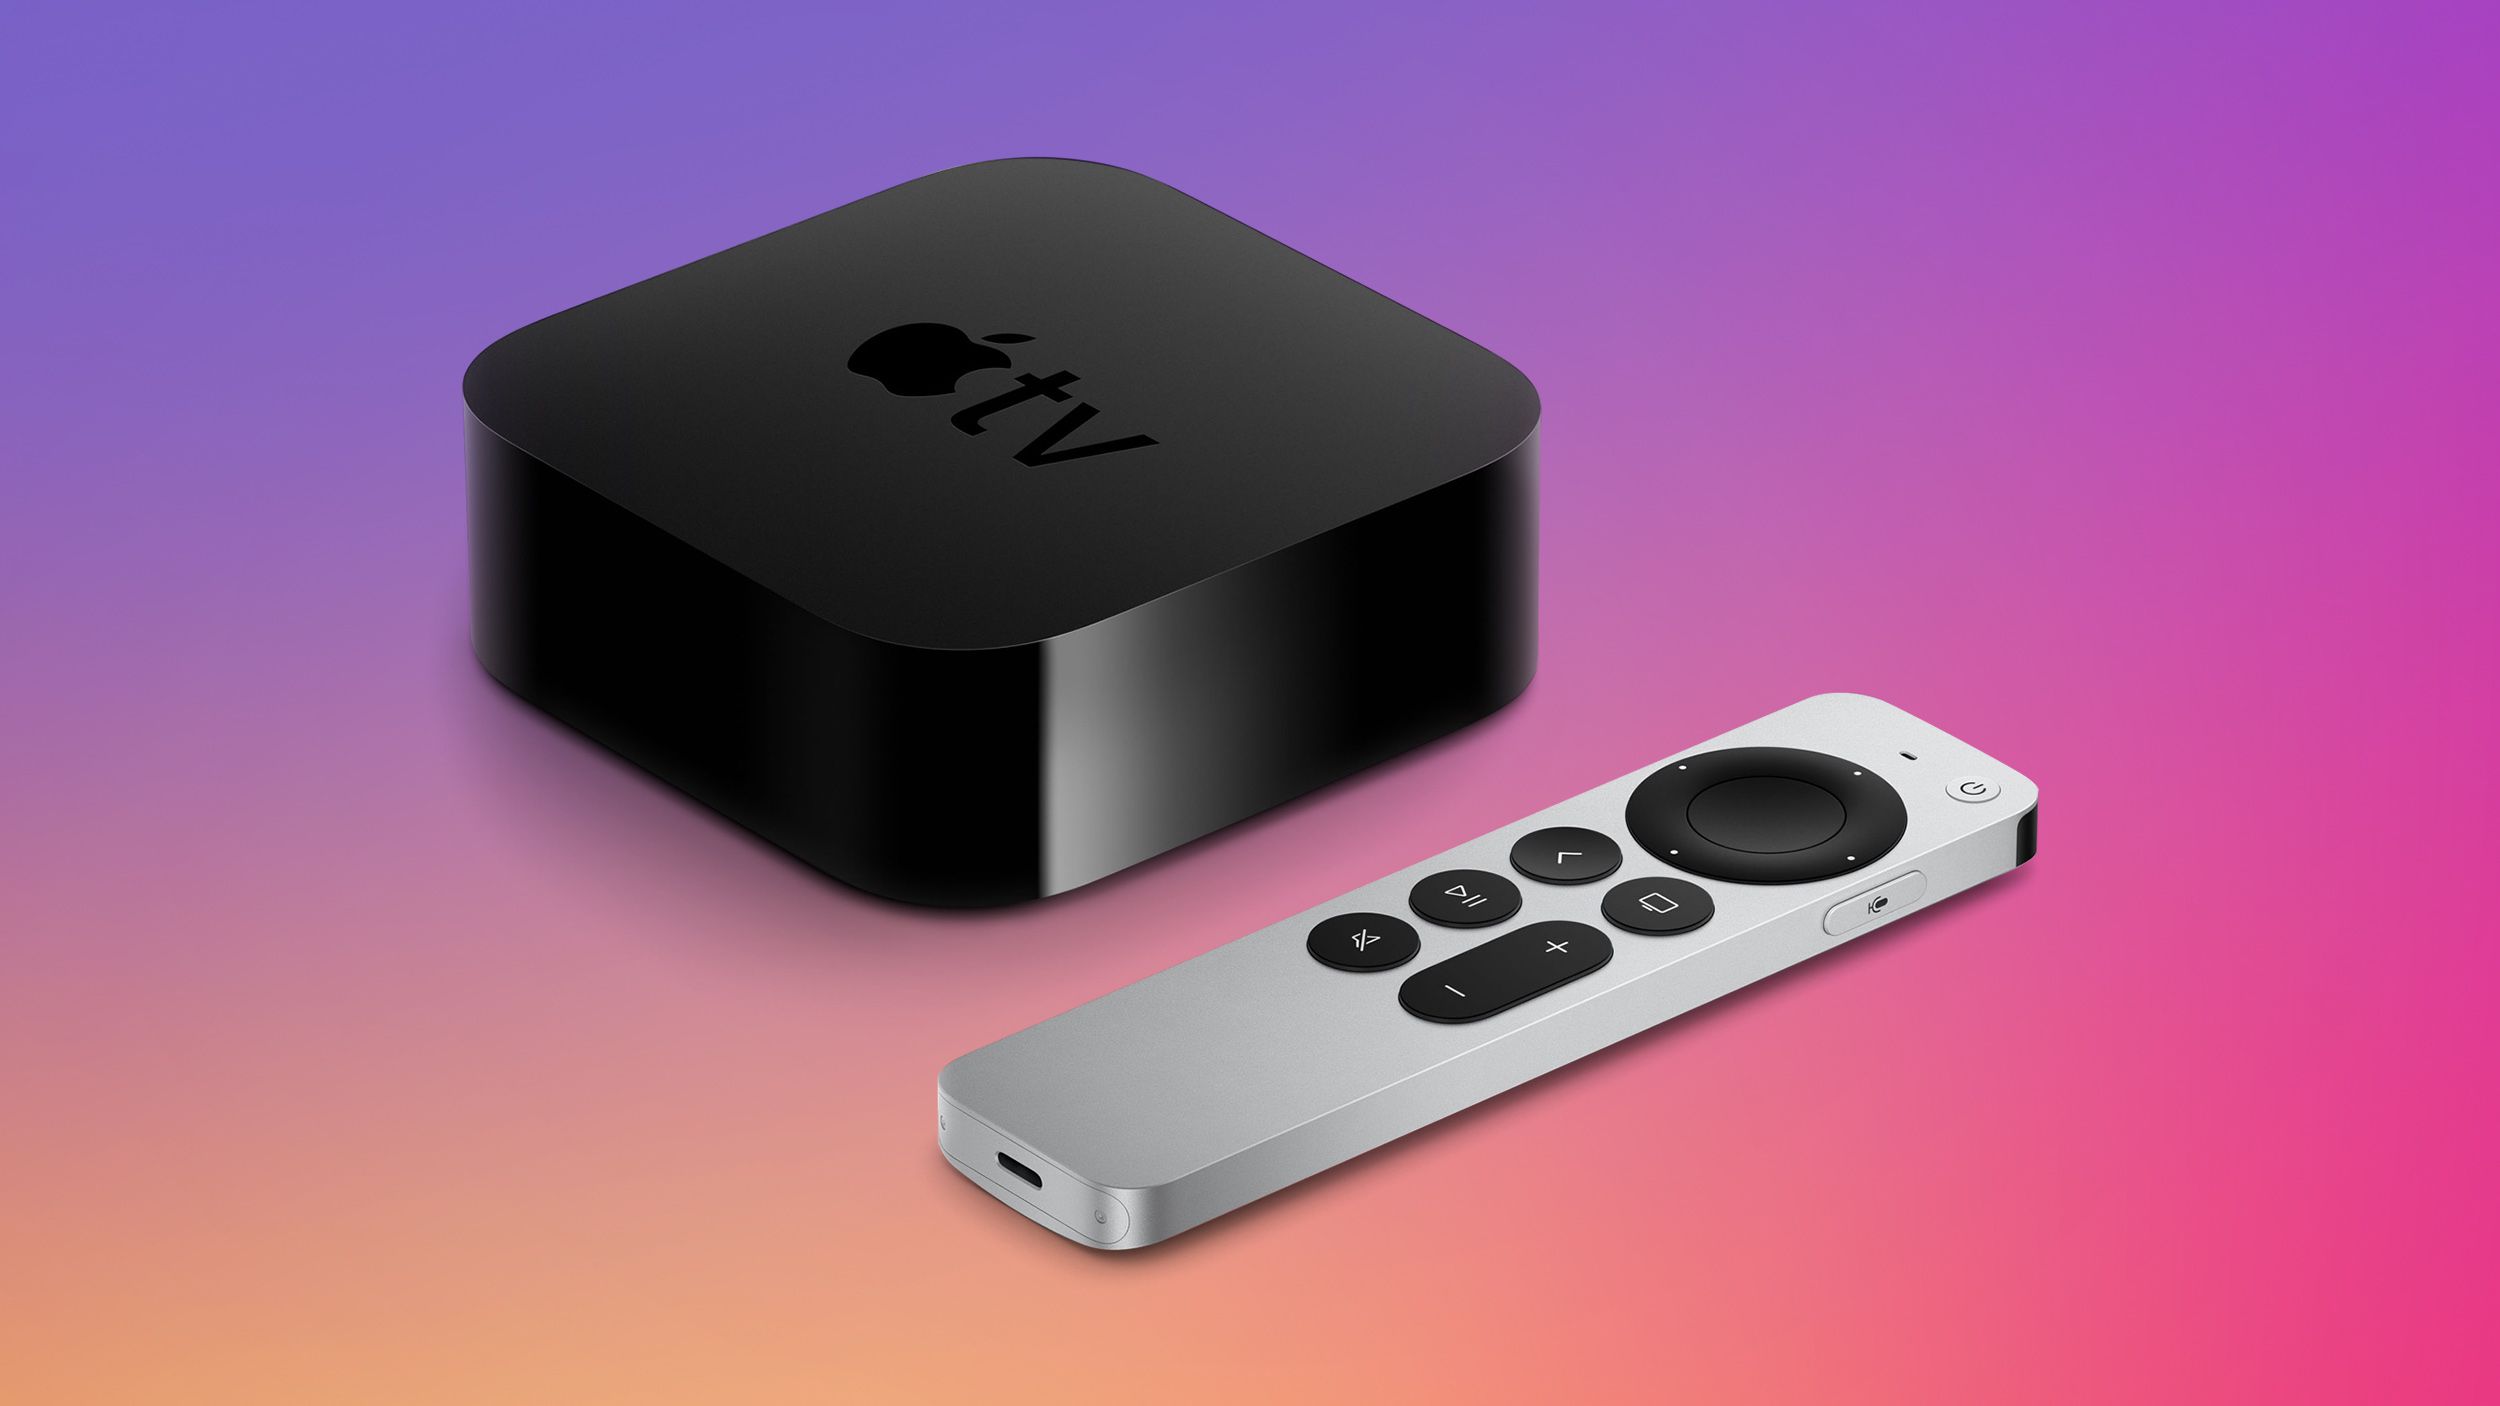 Aanbiedingen: 2021 Apple TV-modellen krijgen eerste korting, 32 GB 4K-model naar 169,98 9 korting) - Atsit